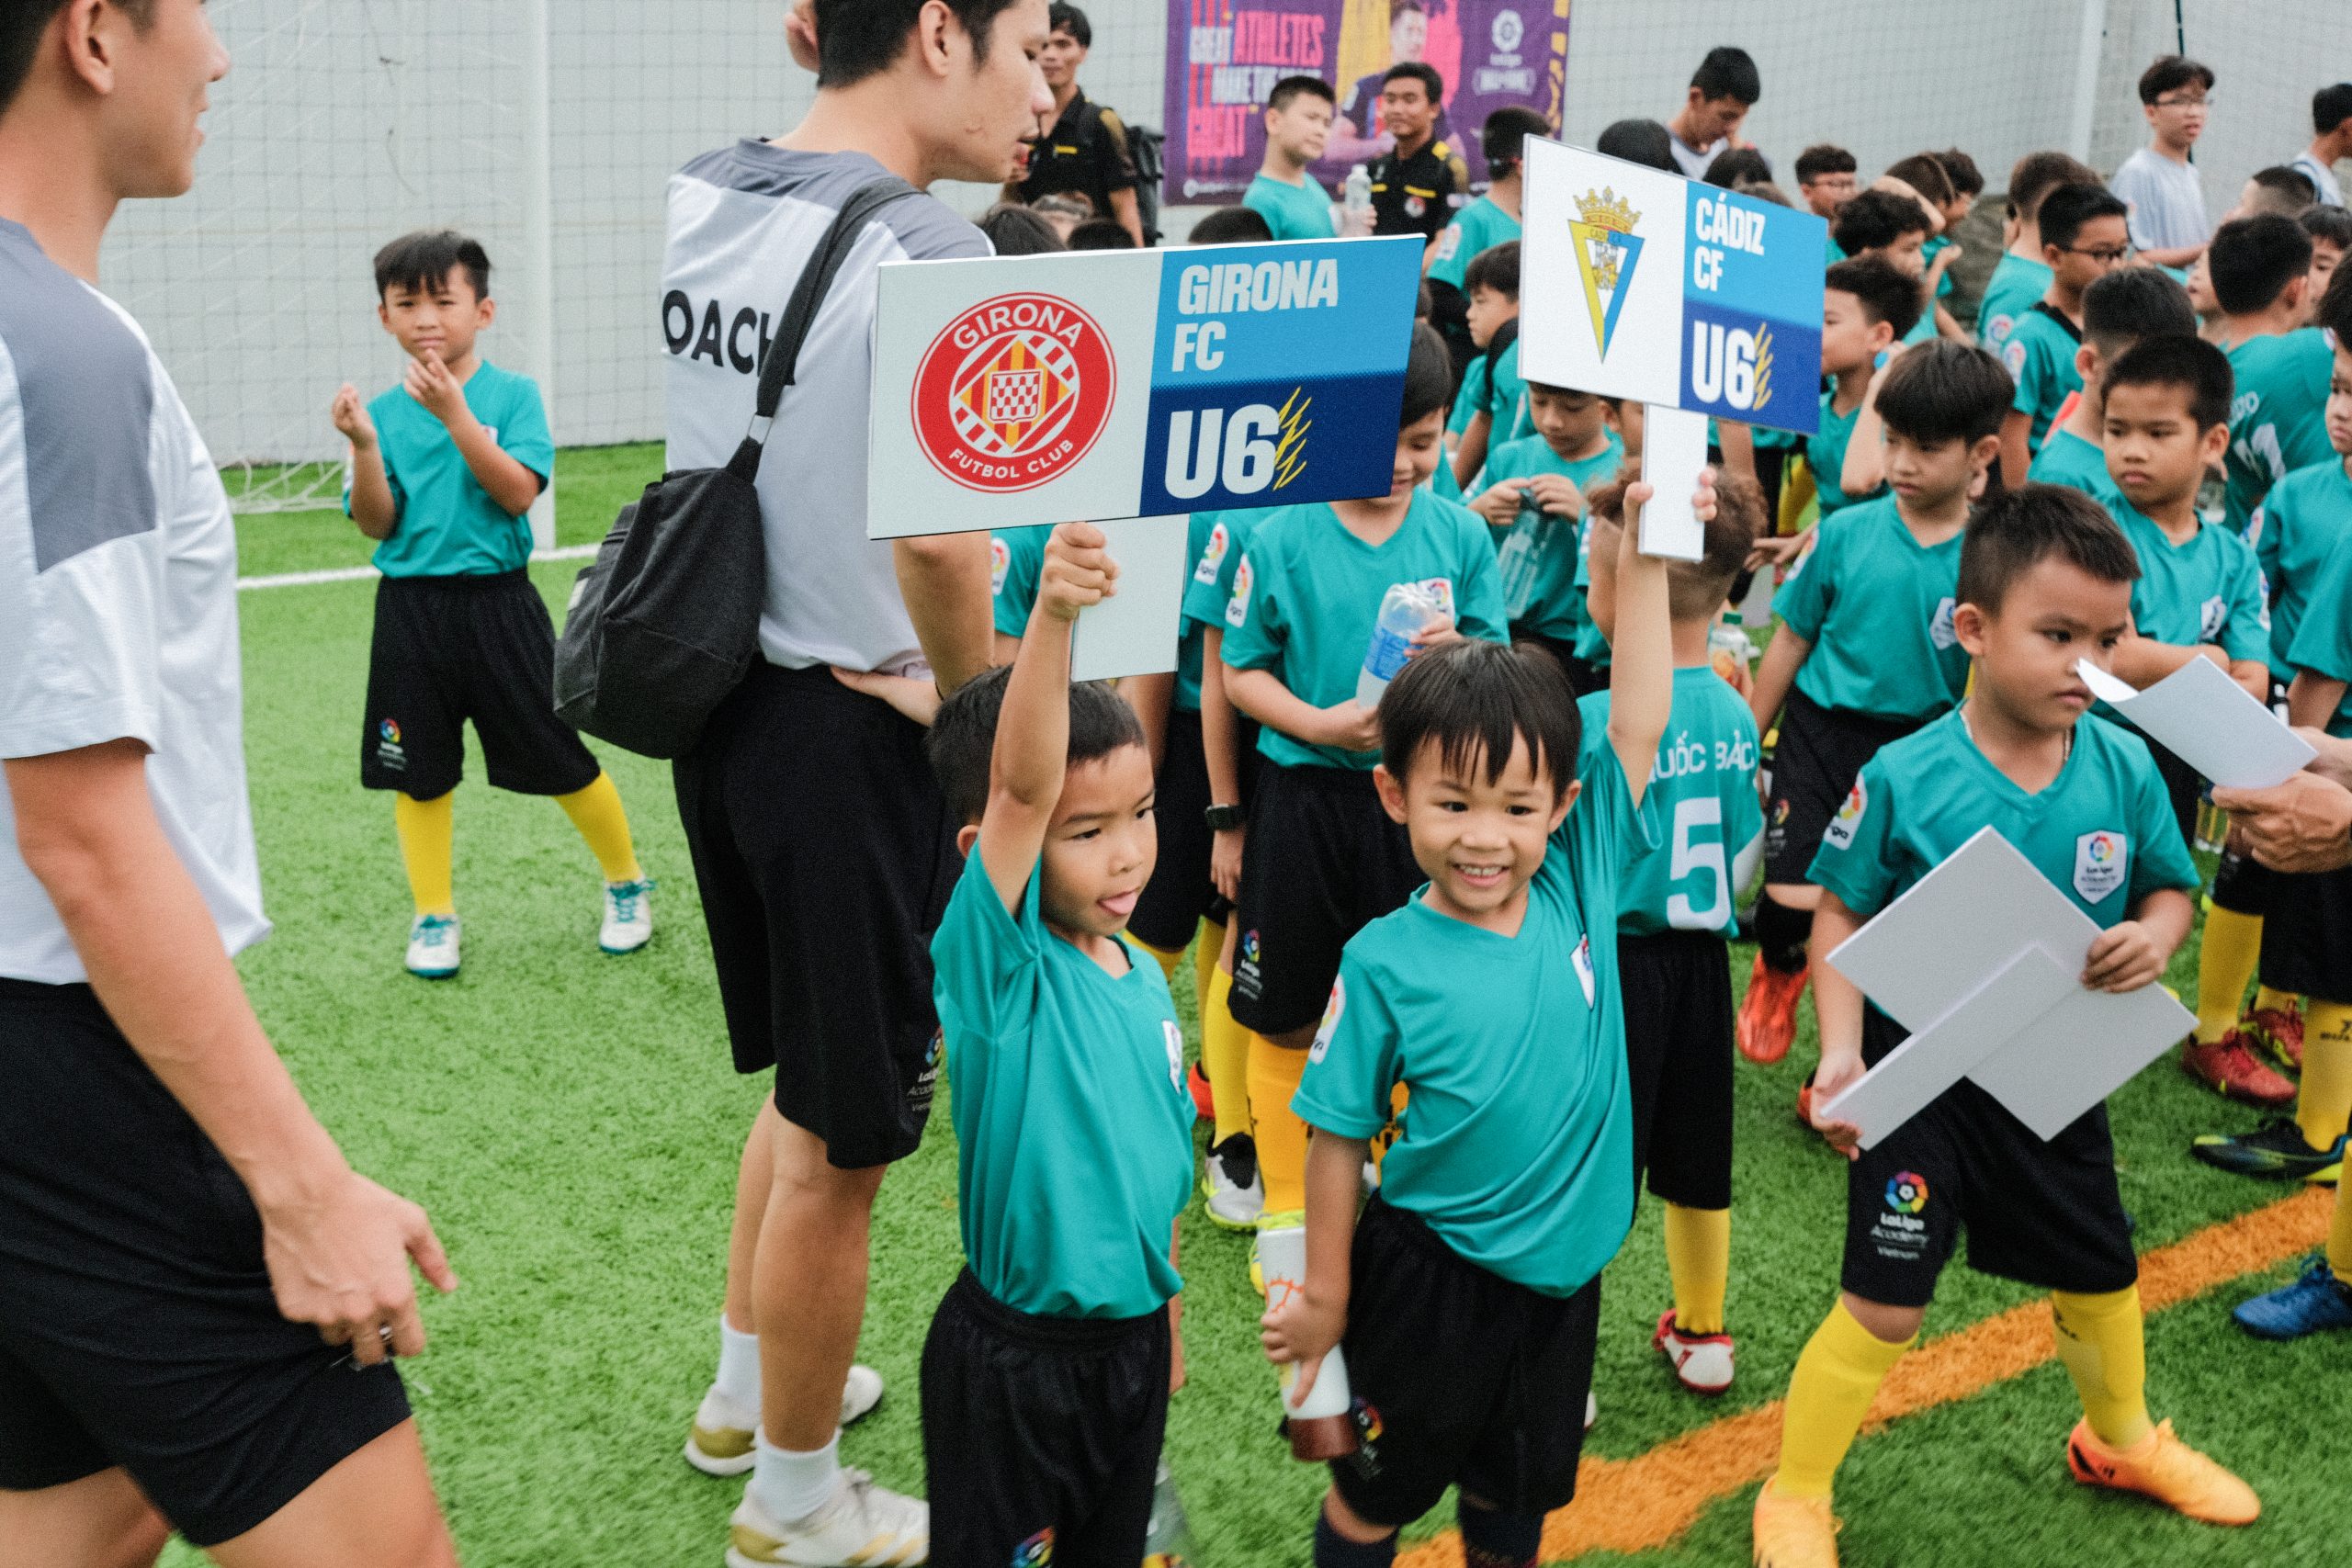 DSCF1103 1 scaled | Laliga Việt Nam - Ươm mầm tài năng bóng đá trẻ